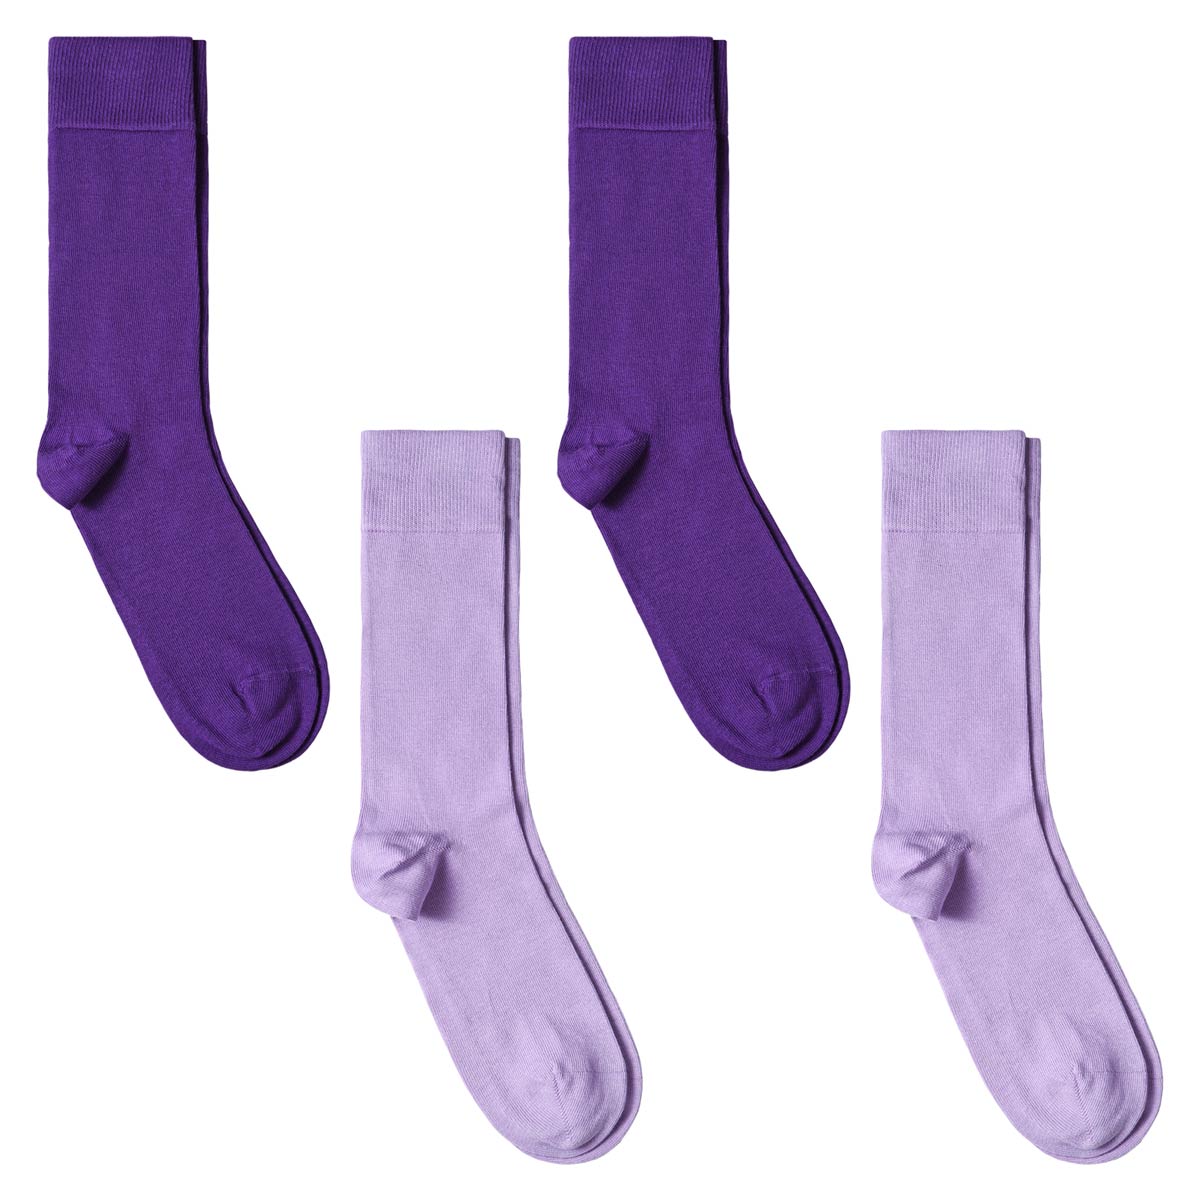 CH-00719_A12-1--_Lot-4-paires-de-chaussettes-homme-assorties-violet-mauve-unies